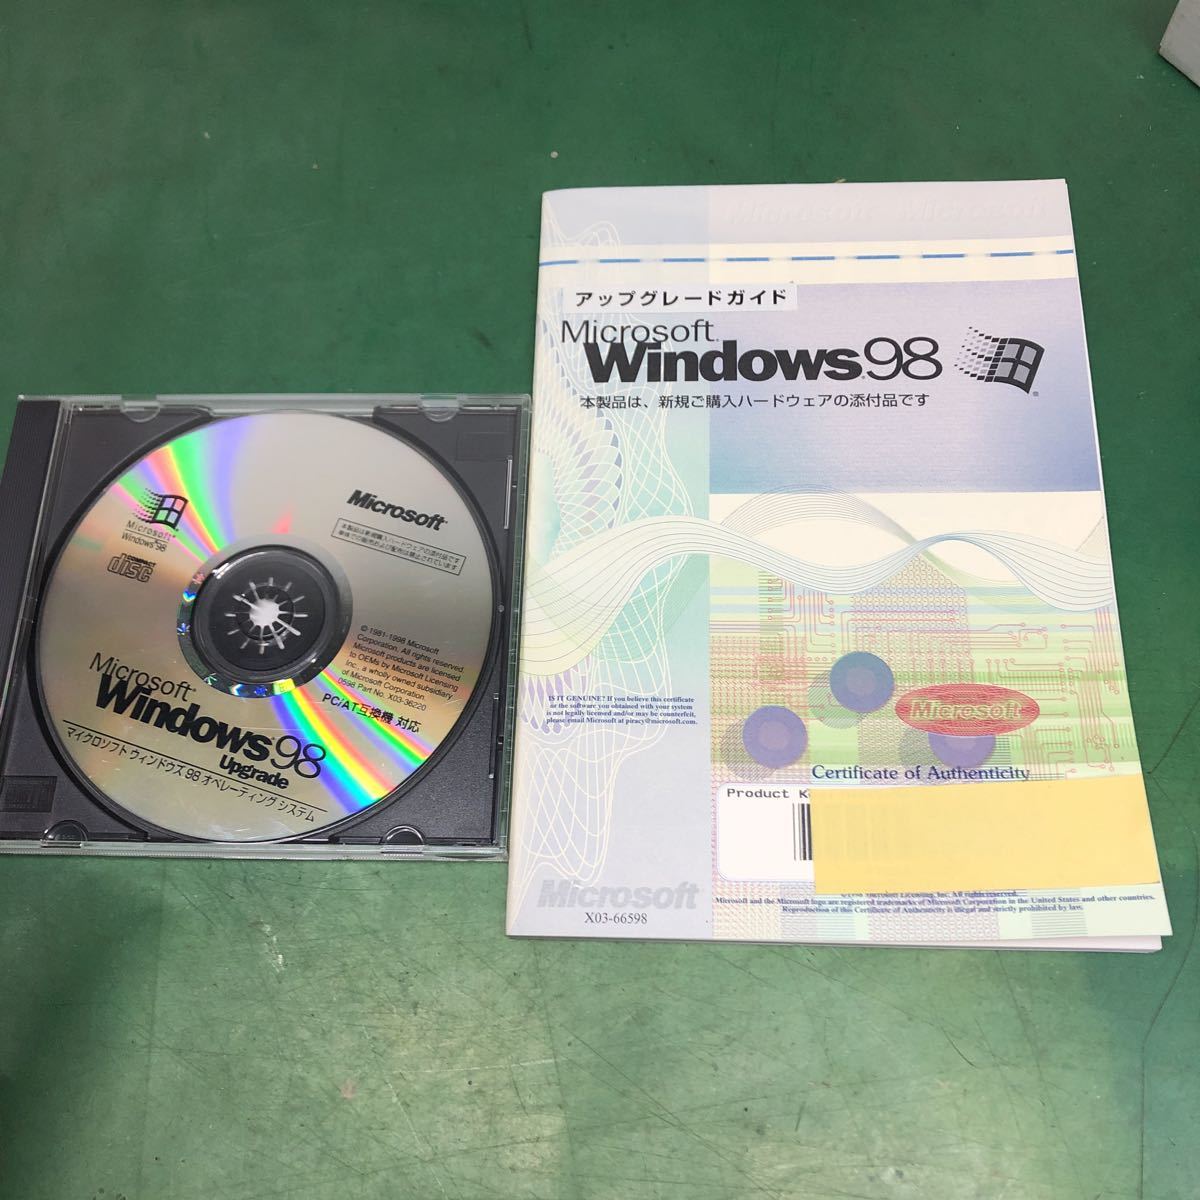 アップグレードガイド Microsoft Windows98 アップグレード用CD PC/AT互換機対応.